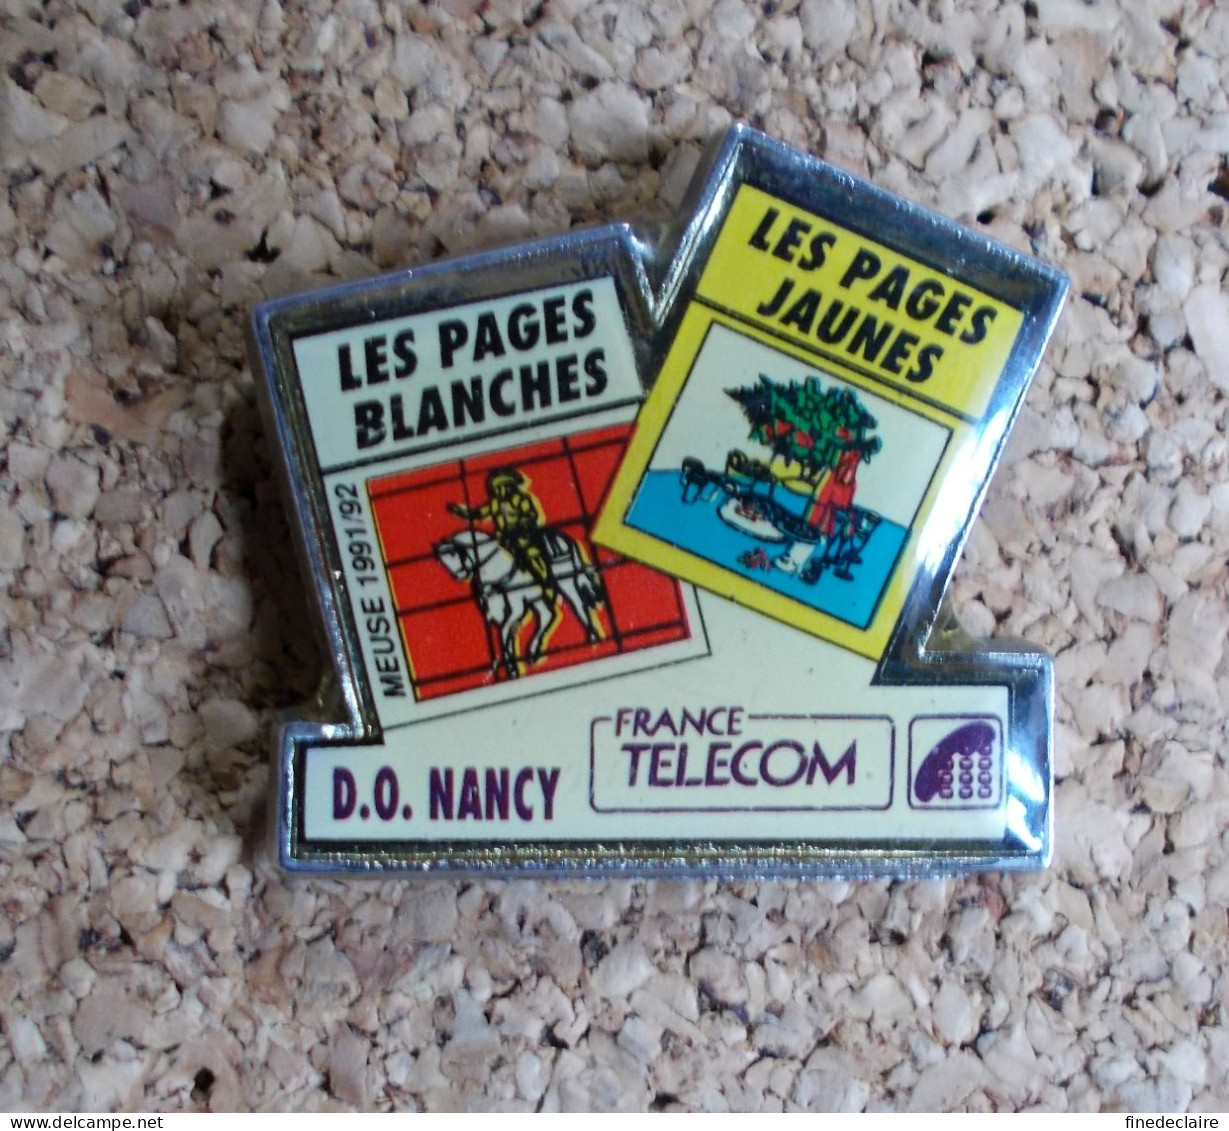 Pin's - France Télécom - D.O. Nancy Les Pages Blanches, Les Pages Jaunes - Meuse 1991/92 - Telecom Francesi